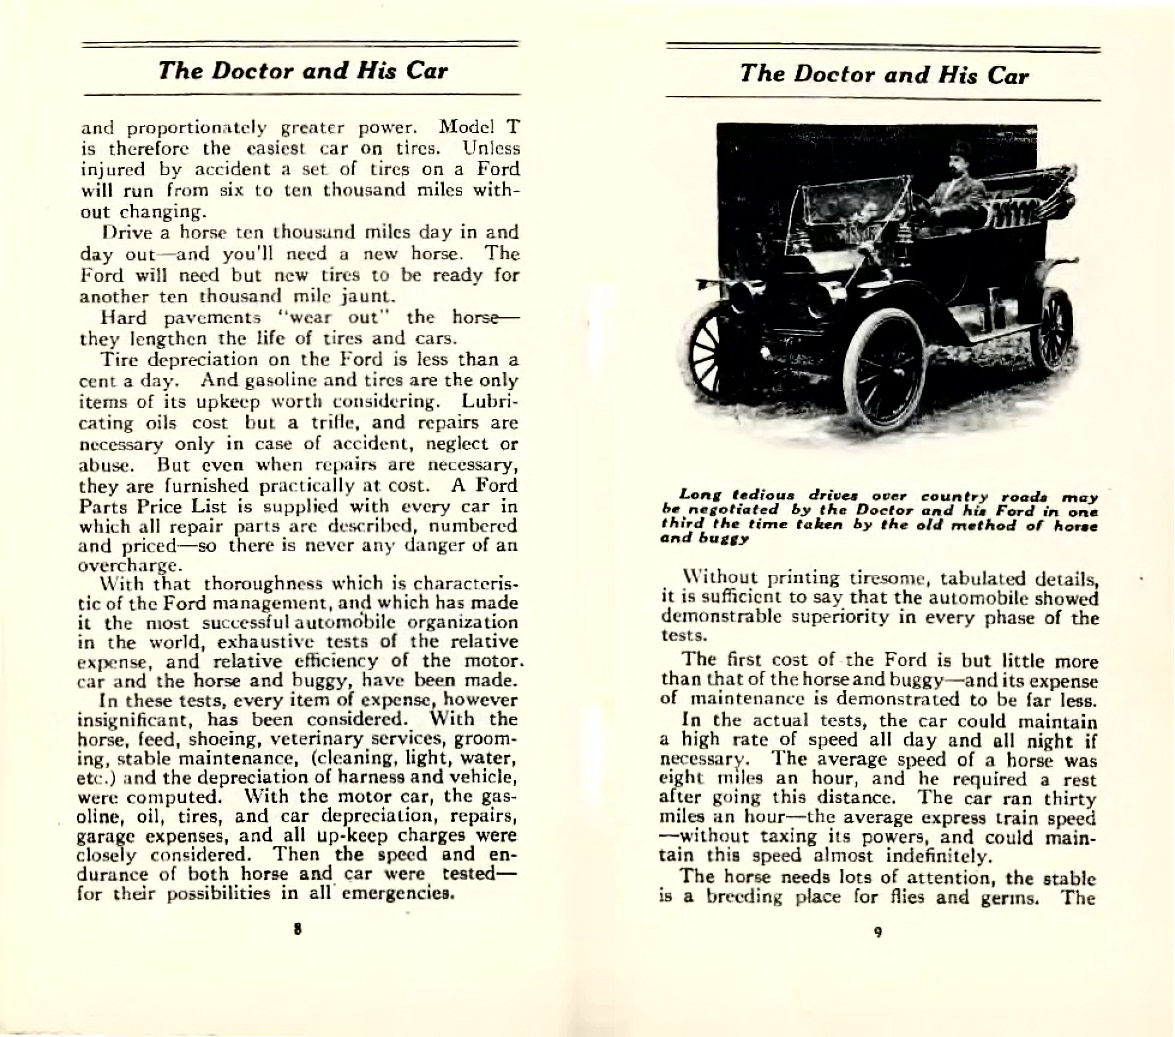 n_1911-The Doctor & His Car-08-09.jpg